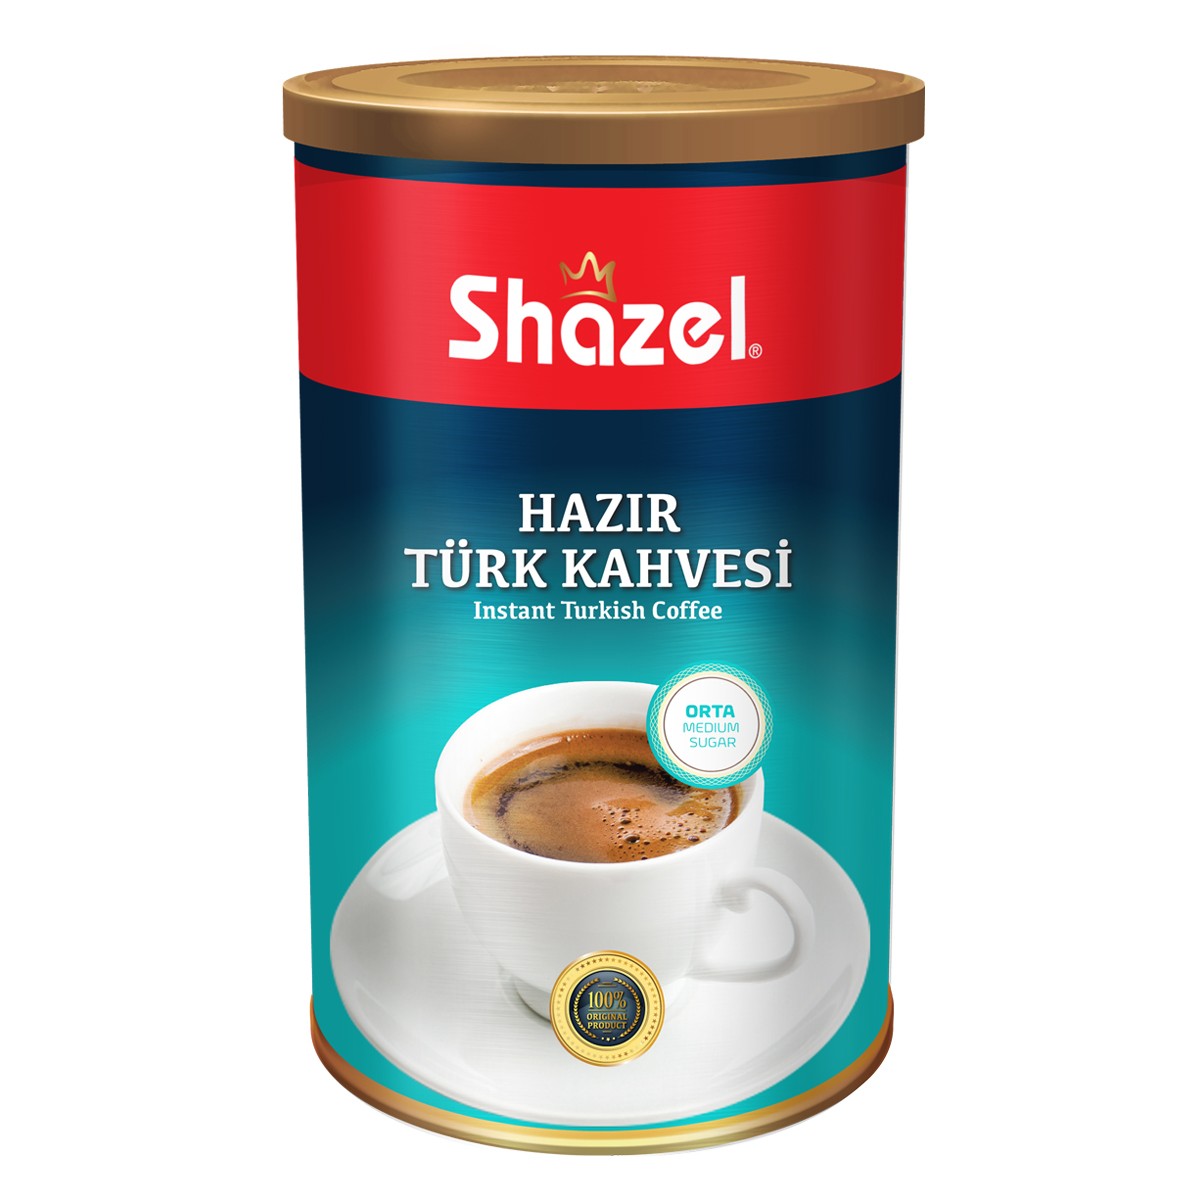 Hazır Türk Kahvesi Orta 500 g teneke x 6 adet